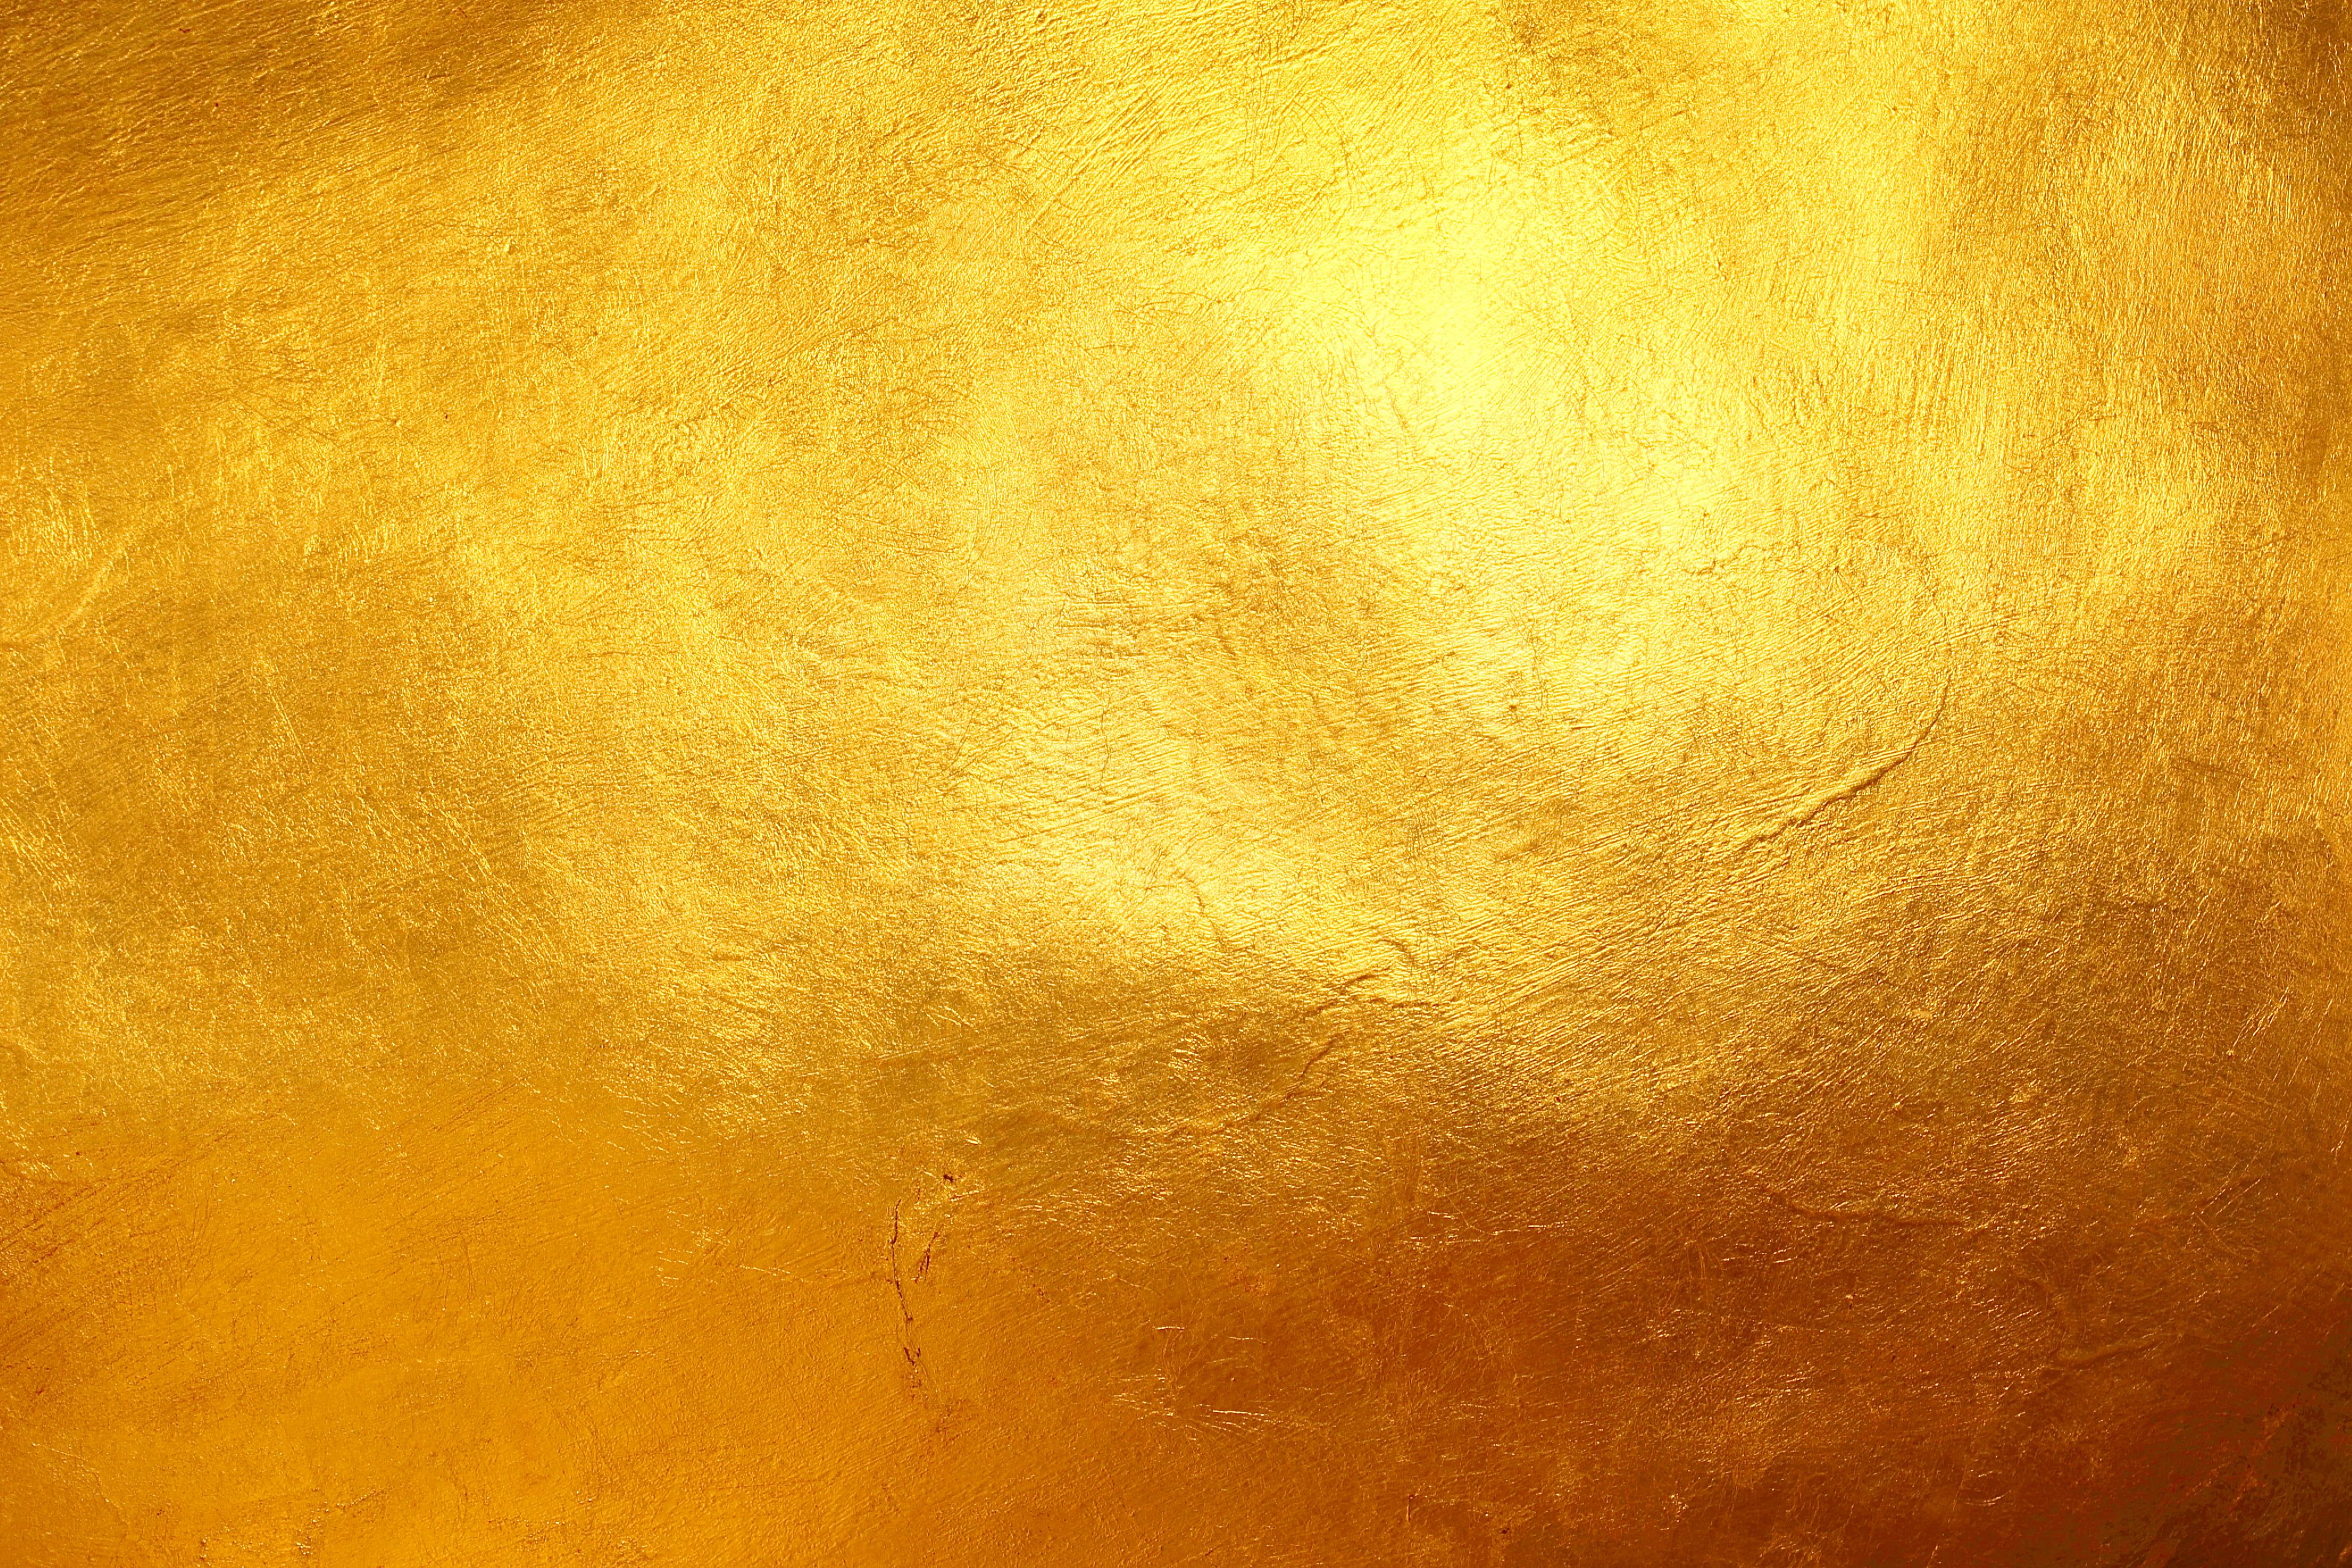 Hình nền vàng chất liệu mang lại sự độc đáo và đẳng cấp cho thiết bị của bạn. Với các kiểu dáng và kết cấu khác nhau, hình nền vàng chất liệu sẽ giúp bạn tạo nên một không gian trang nhã và quyến rũ trên màn hình của mình.